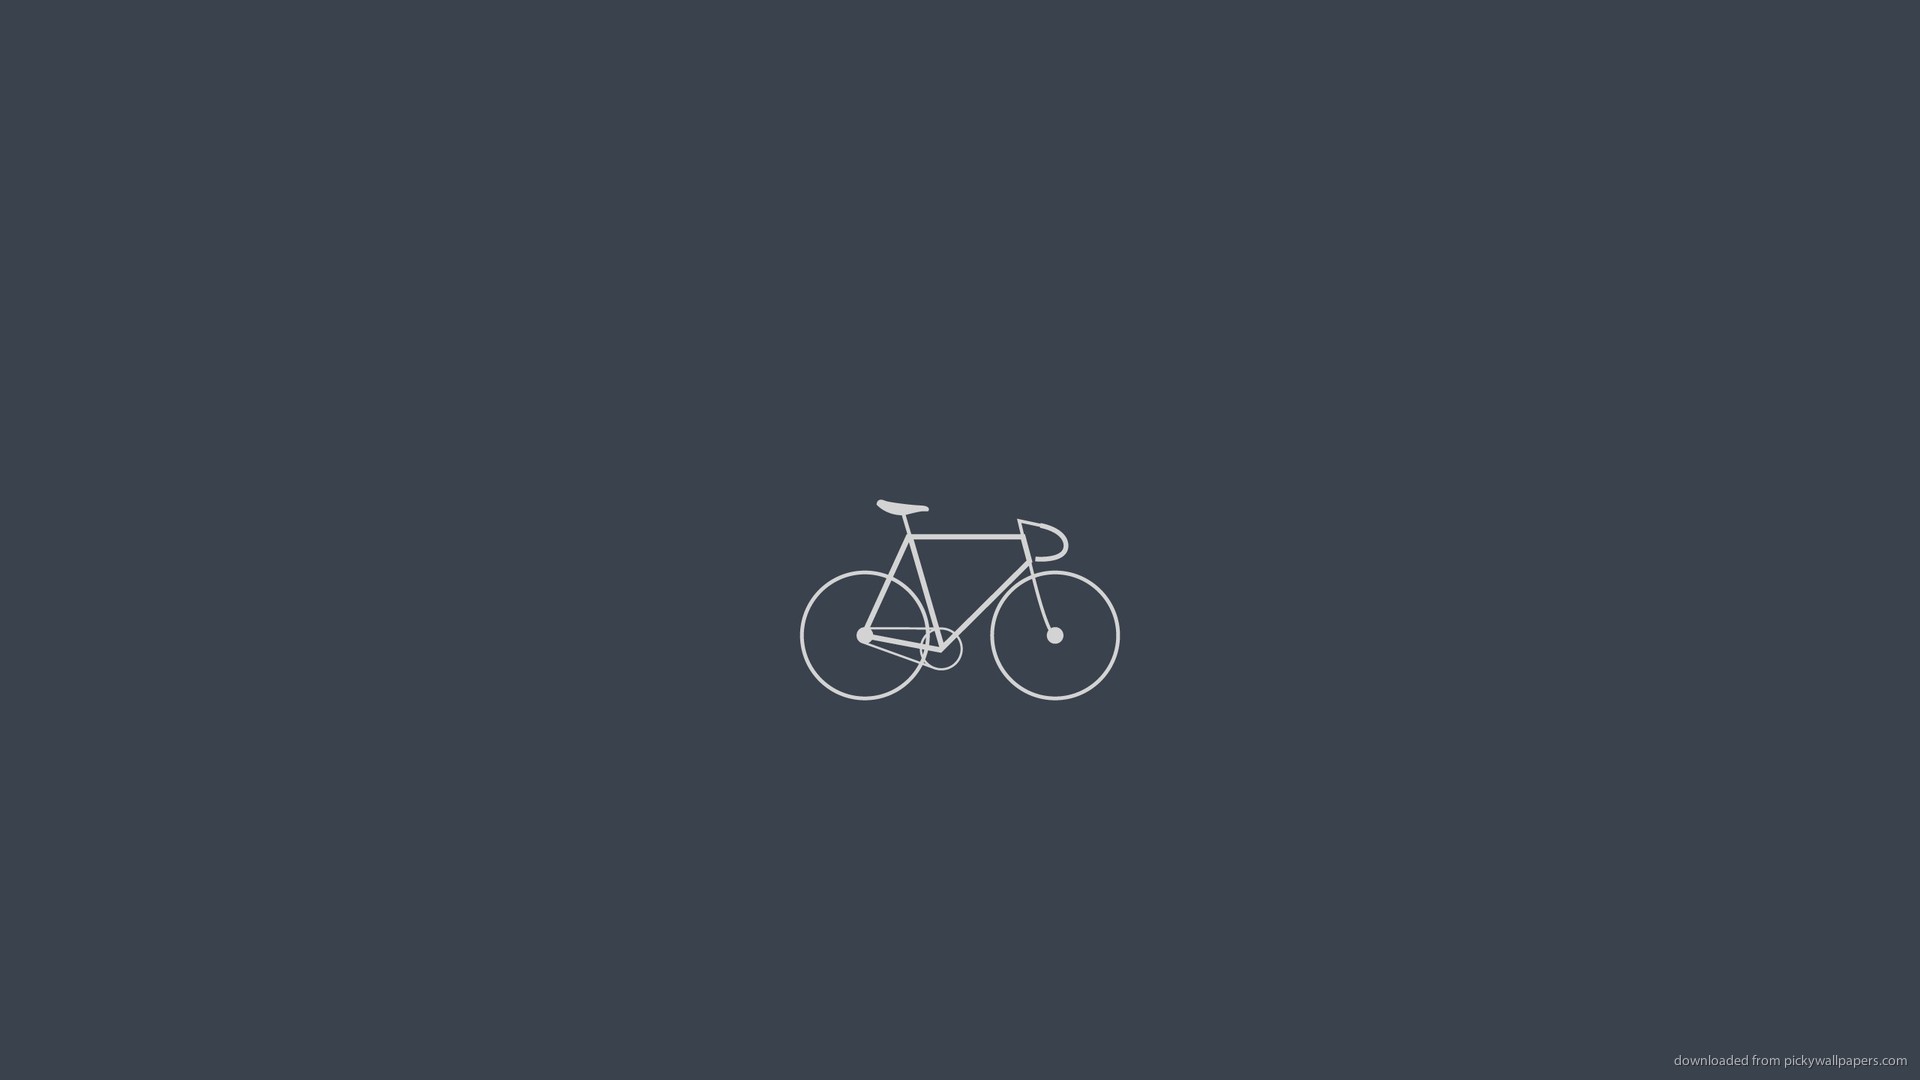 Download 1920x1080 Minimalistci Fixed Gear Bike Wallpaper